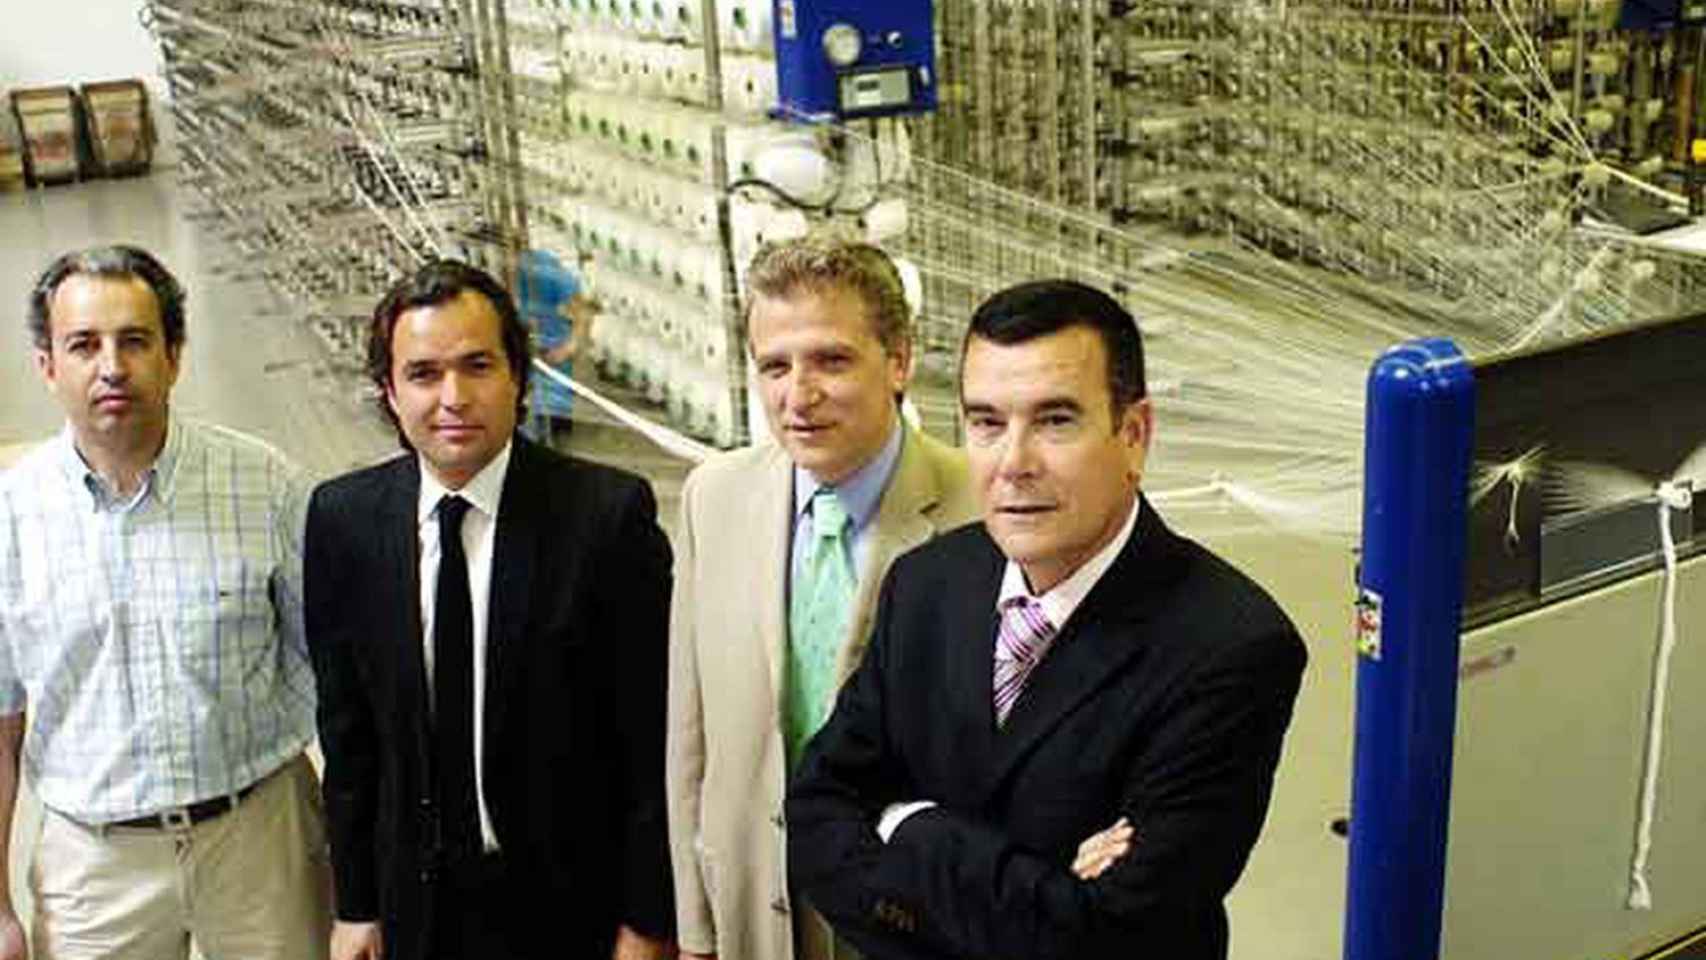 Pablo Olona, segundo por la derecha, según una fotografía publicada en 'El País' en 2007.